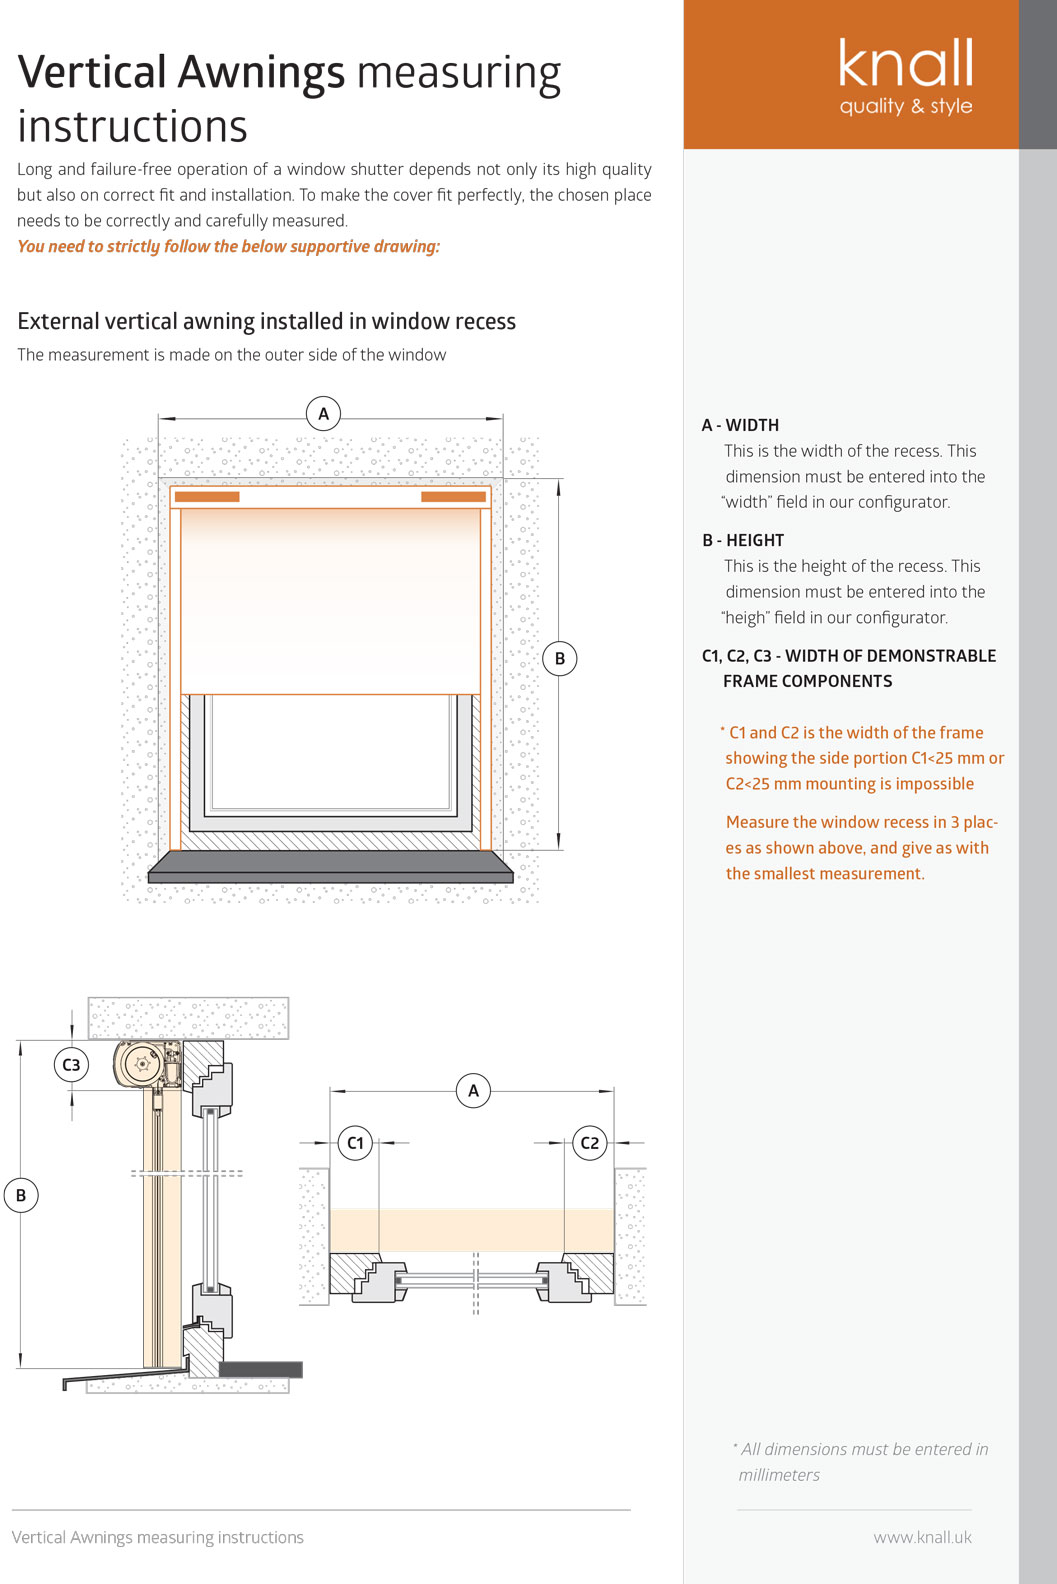 Vertical awnings measuring